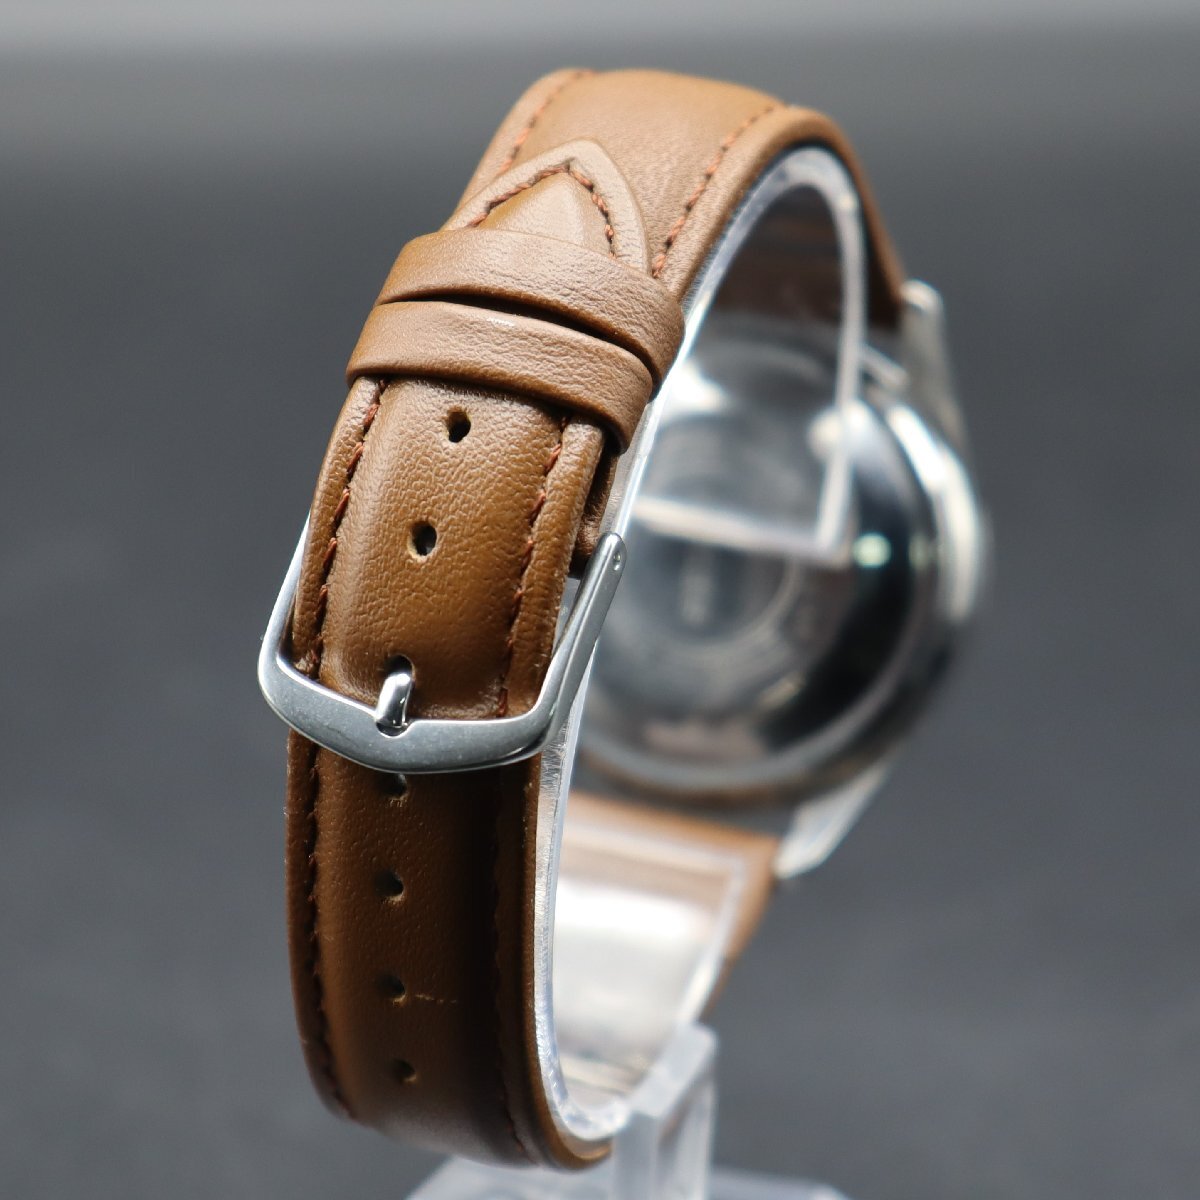 SEIKO Sportsmatic 5 セイコー スポーツマチック 6619-8250 自動巻き 21石 1966年製 クロスライン 日デイデイト 新品革ベルト メンズ腕時計_画像5